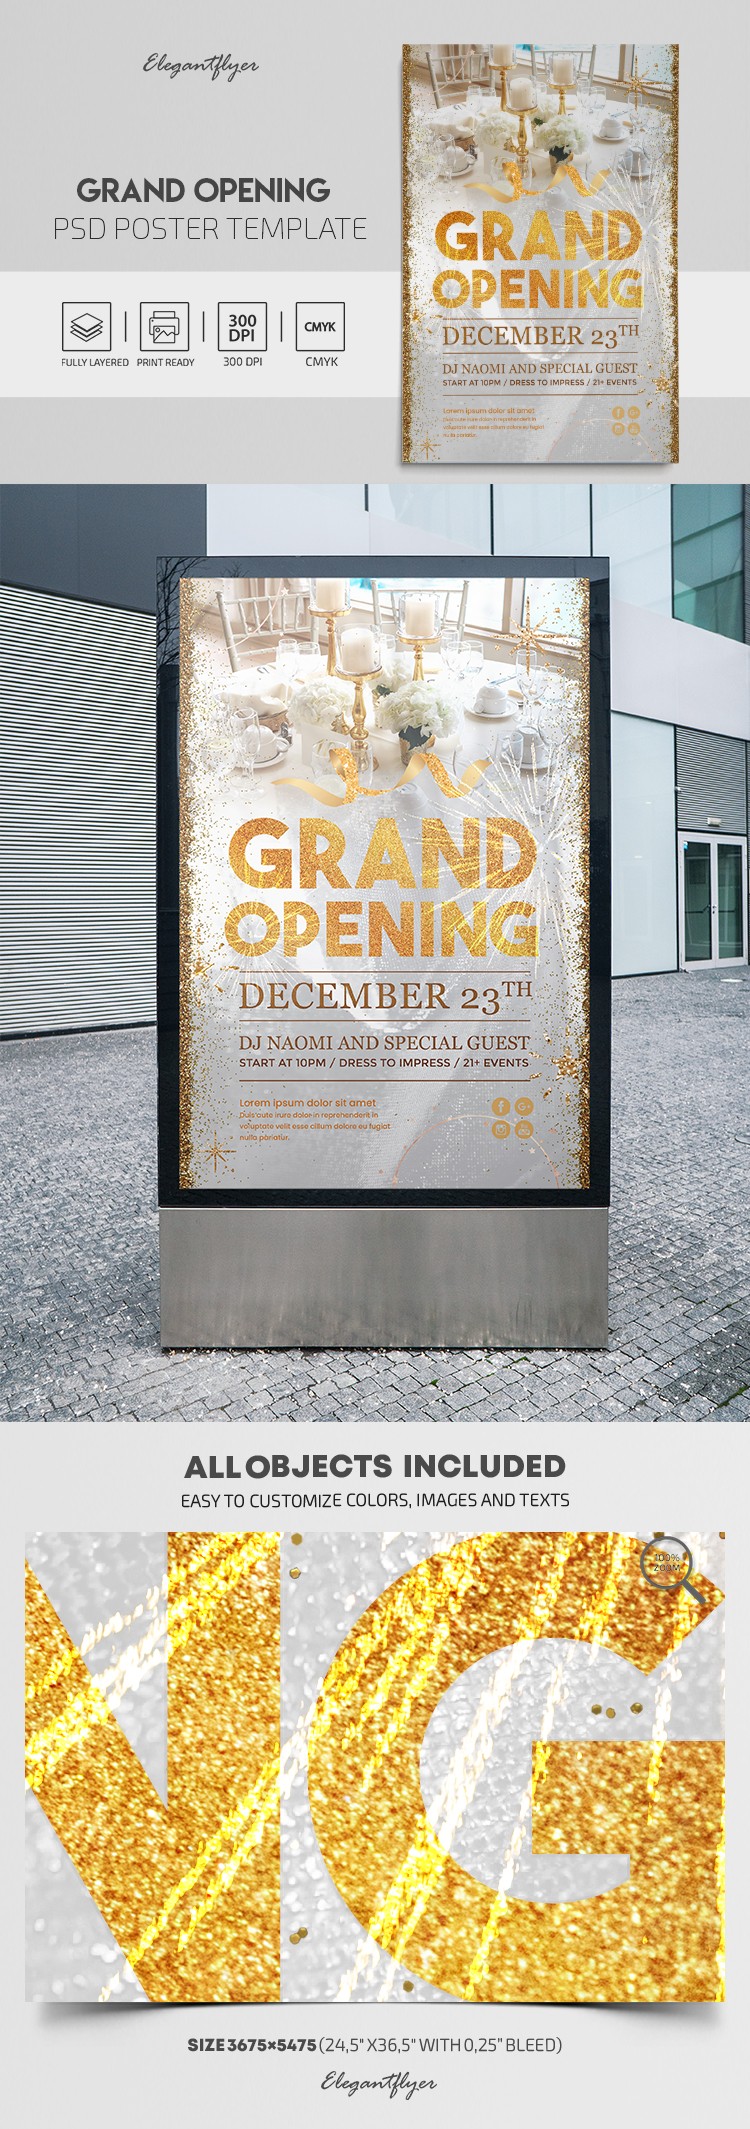 Grande affiche d'ouverture by ElegantFlyer